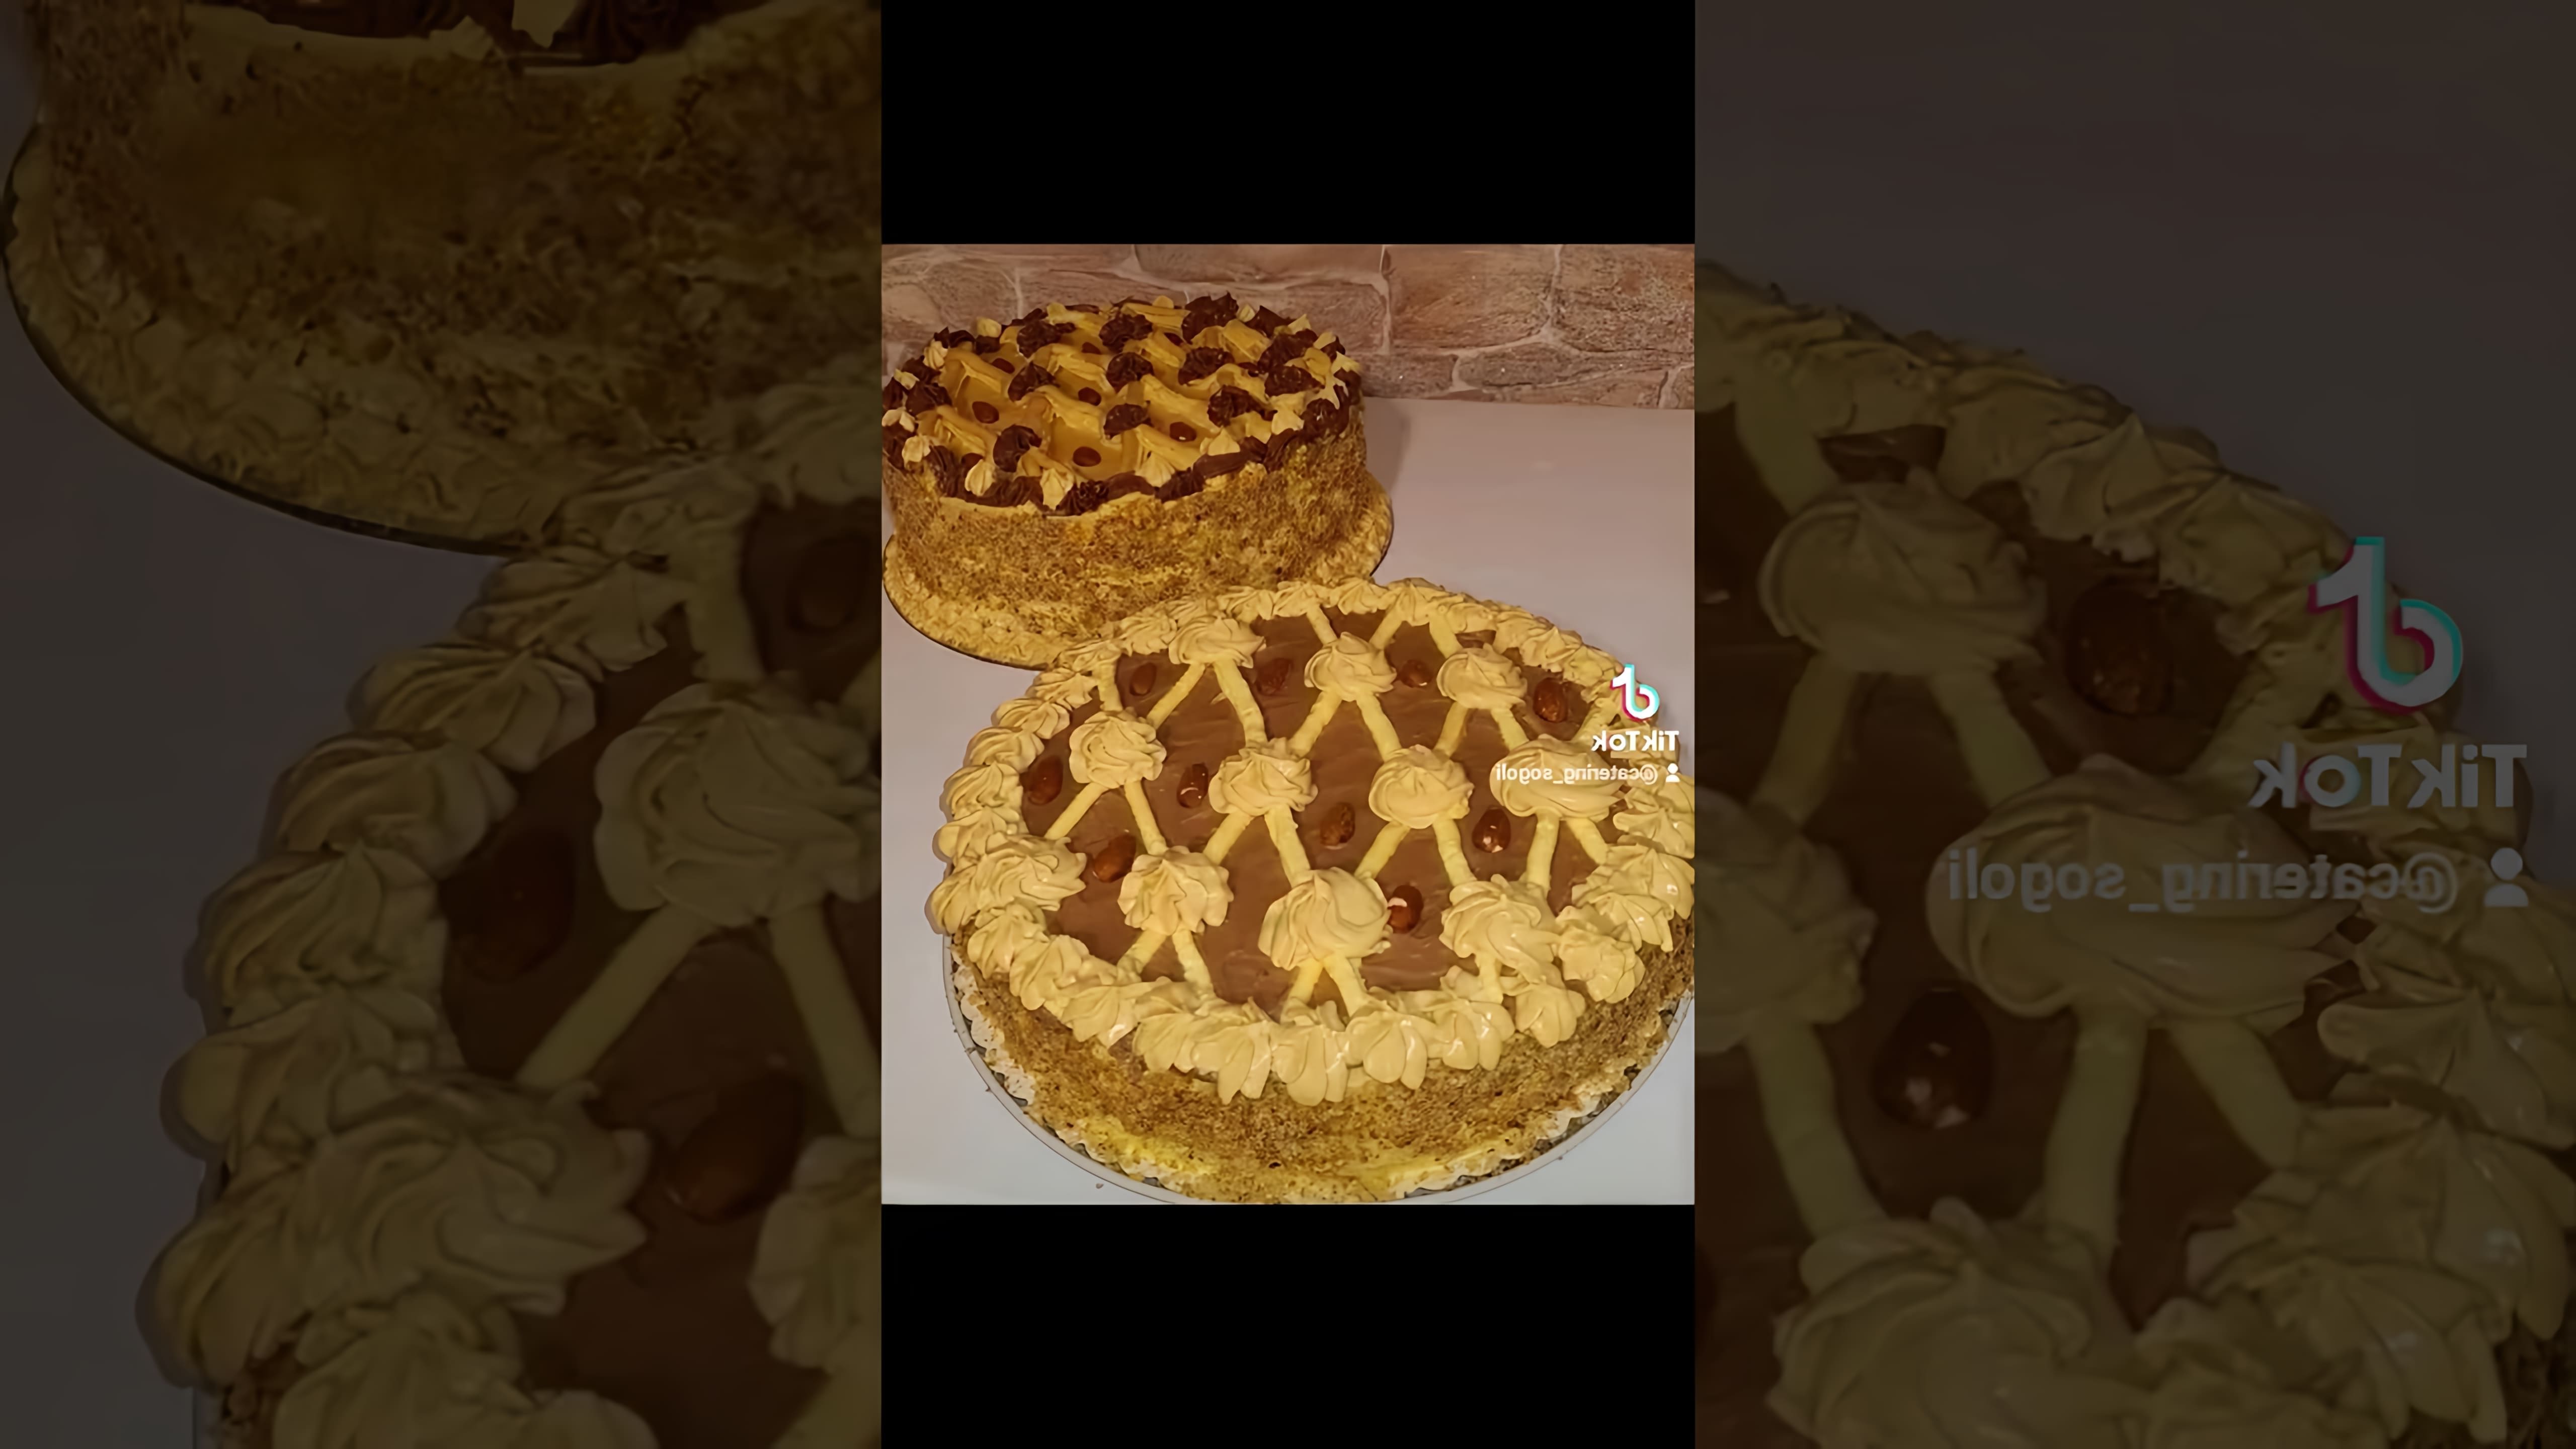 "Торт Апшерон Бакинский на заказ" - это видео-ролик, который демонстрирует процесс приготовления и украшения торта с таким же названием